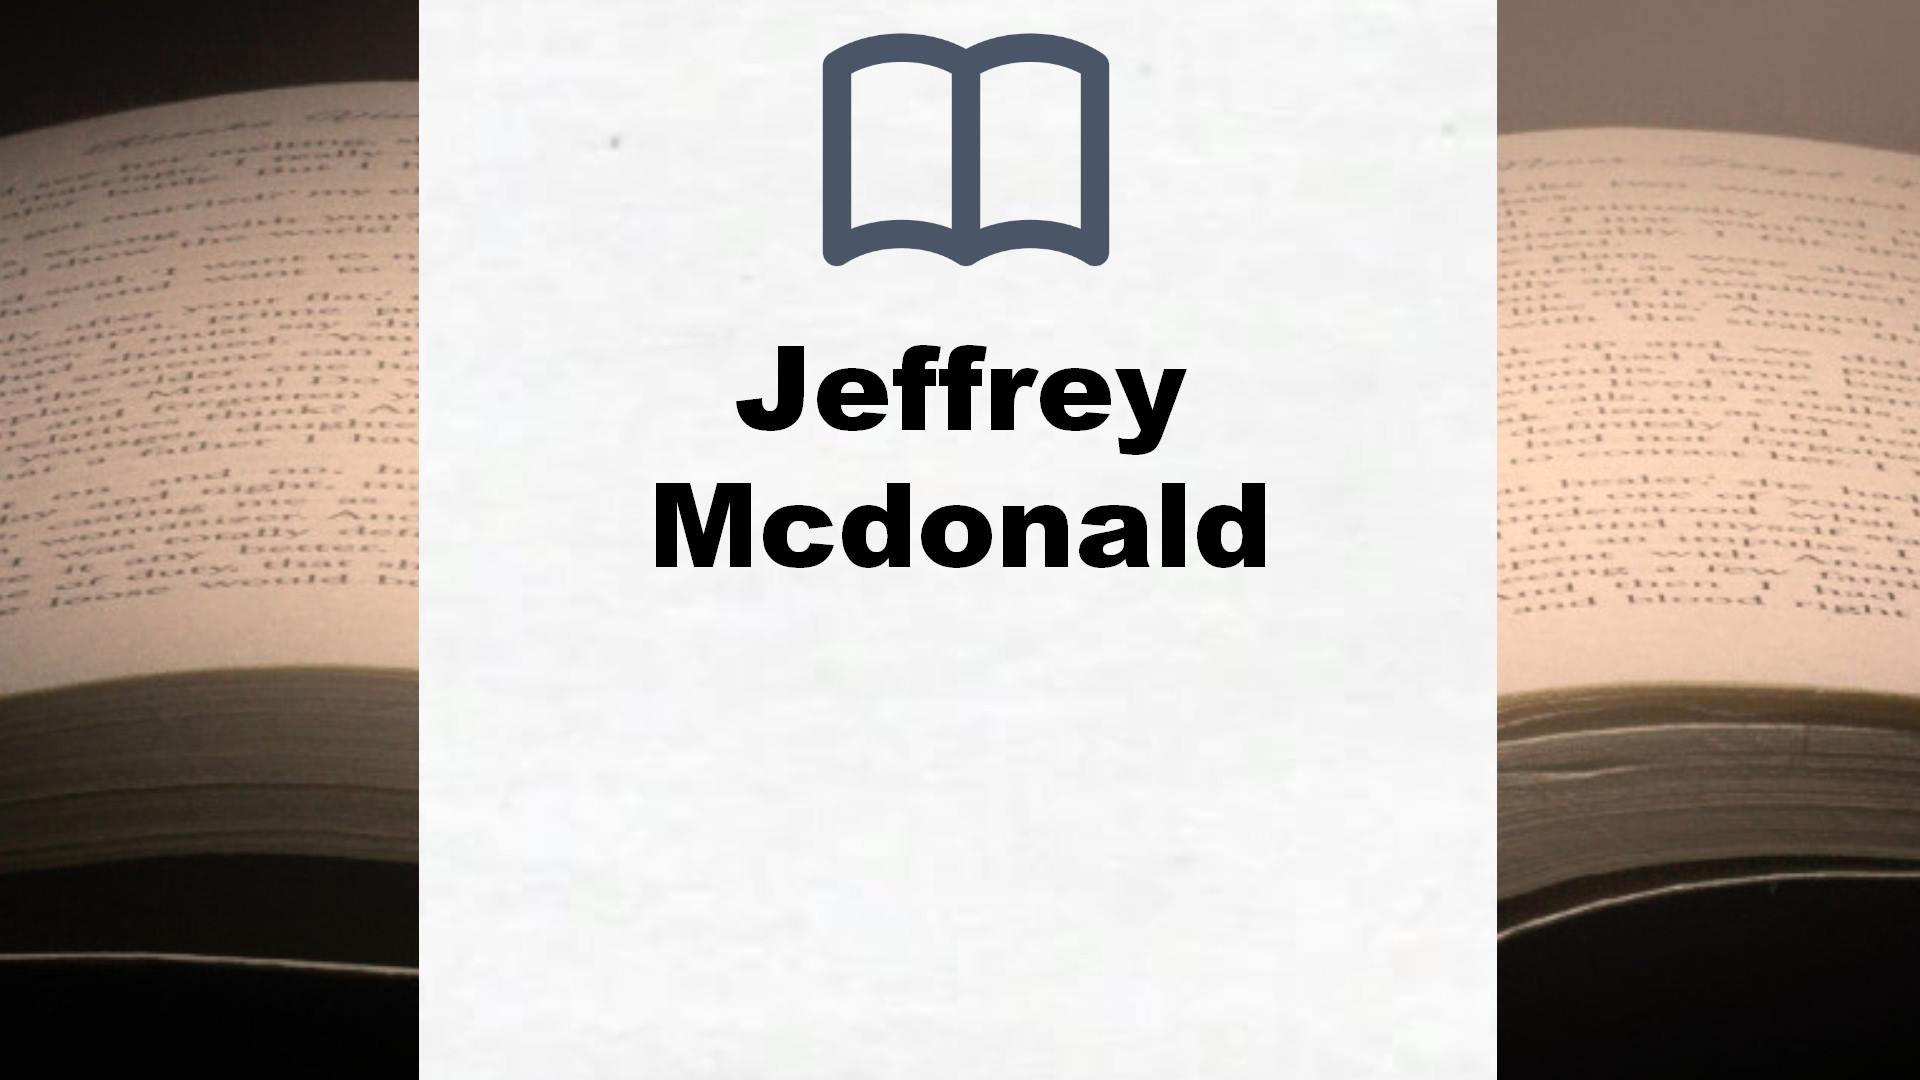 Bücher über Jeffrey Mcdonald